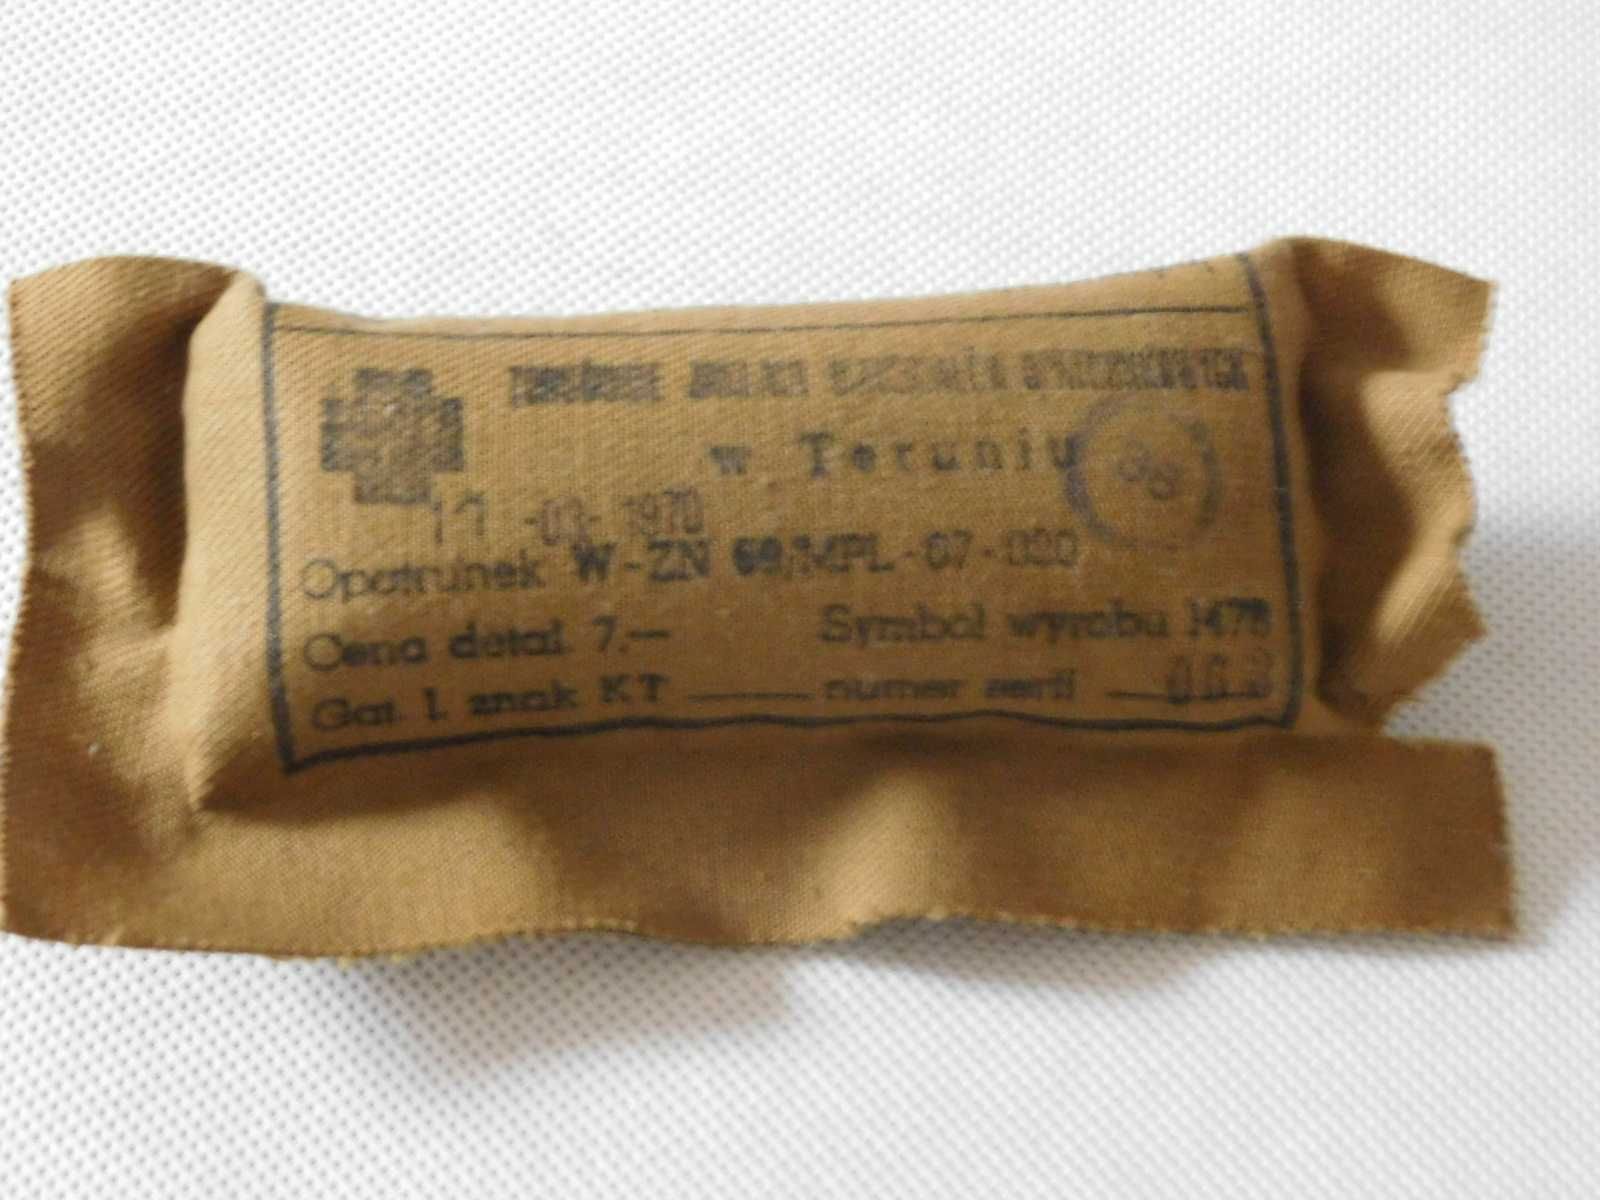 Opatrunek wojskowy bandaż W-ZN-69 1970 LWP